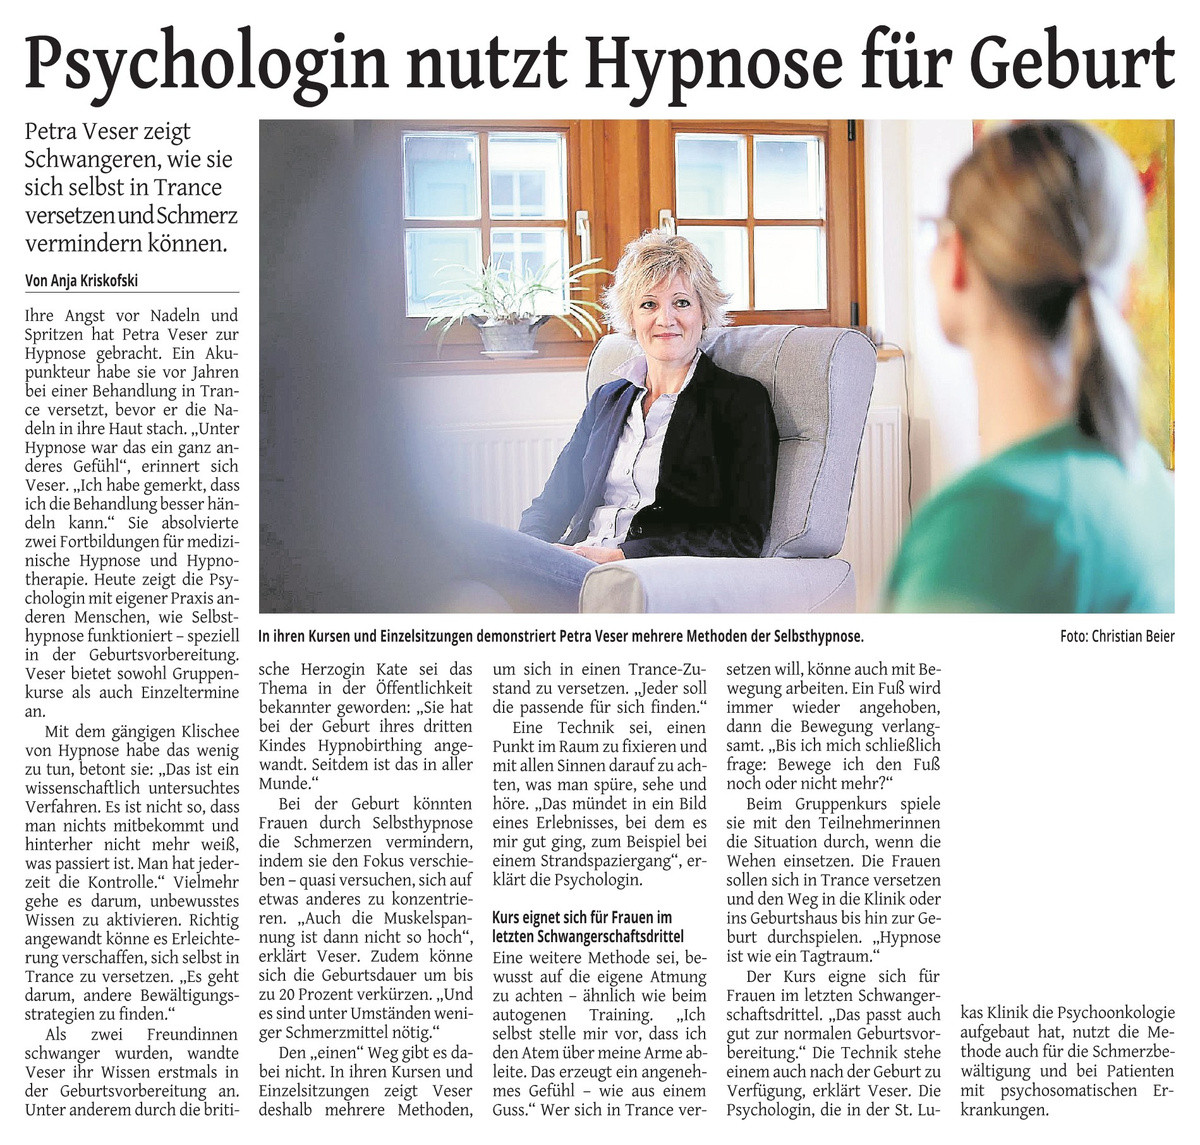 Psychologin nutzt Hypnose für Geburt - Solinger Tageblatt, 19.01.2019